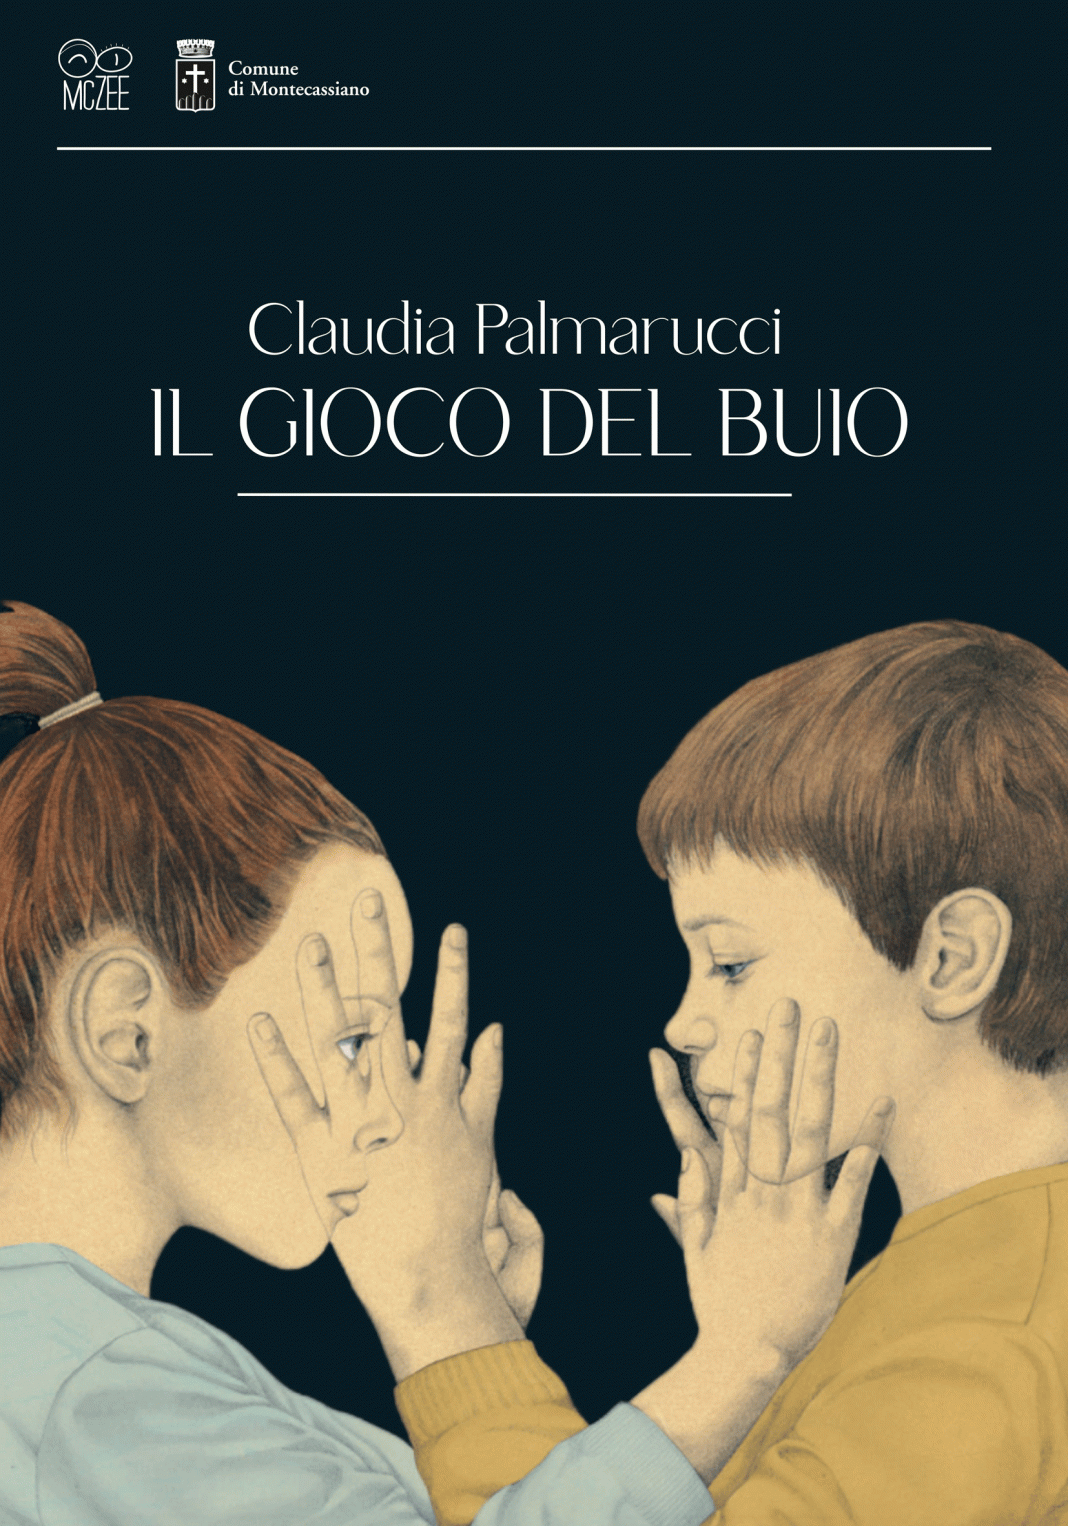 Claudia Palmarucci – Il gioco del buiohttps://www.exibart.com/repository/media/formidable/11/img/58d/Plamarucci-locandina-web-1068x1526.gif